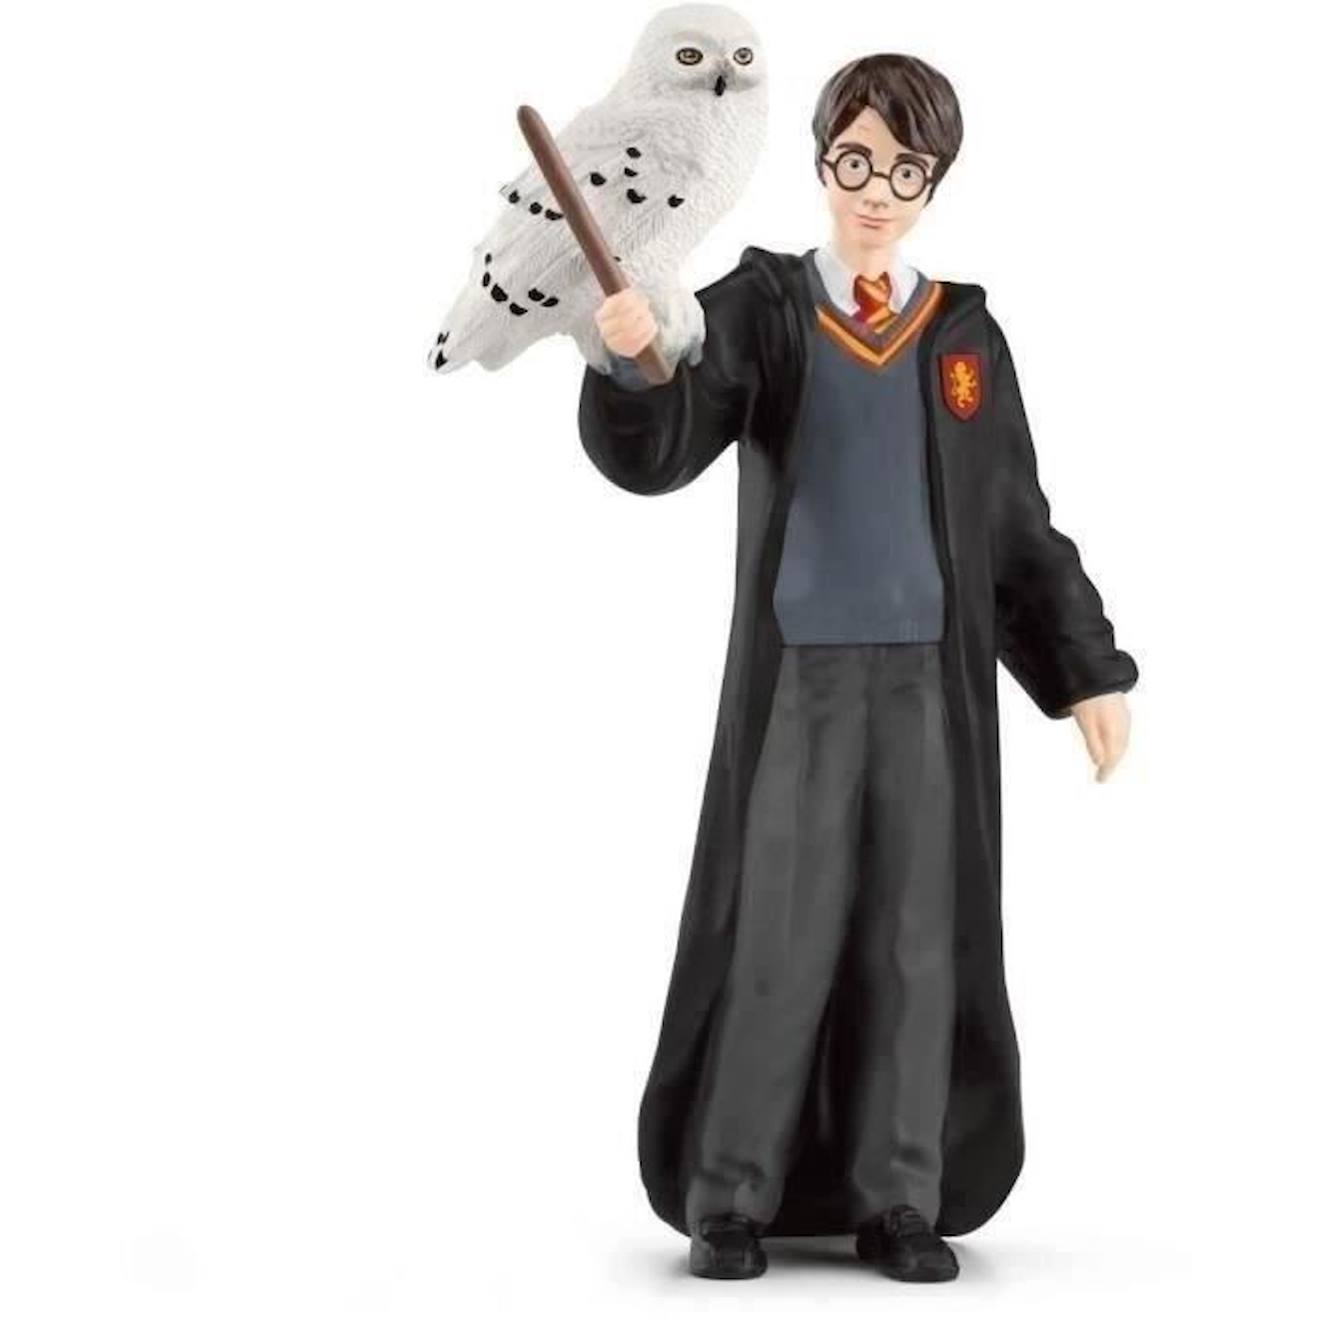 Harry Et Hedwige, Figurine De L'univers Harry Potter®, Pour Enfants Dès 6 Ans, 4 X 2,5 X 10 Cm - Sch